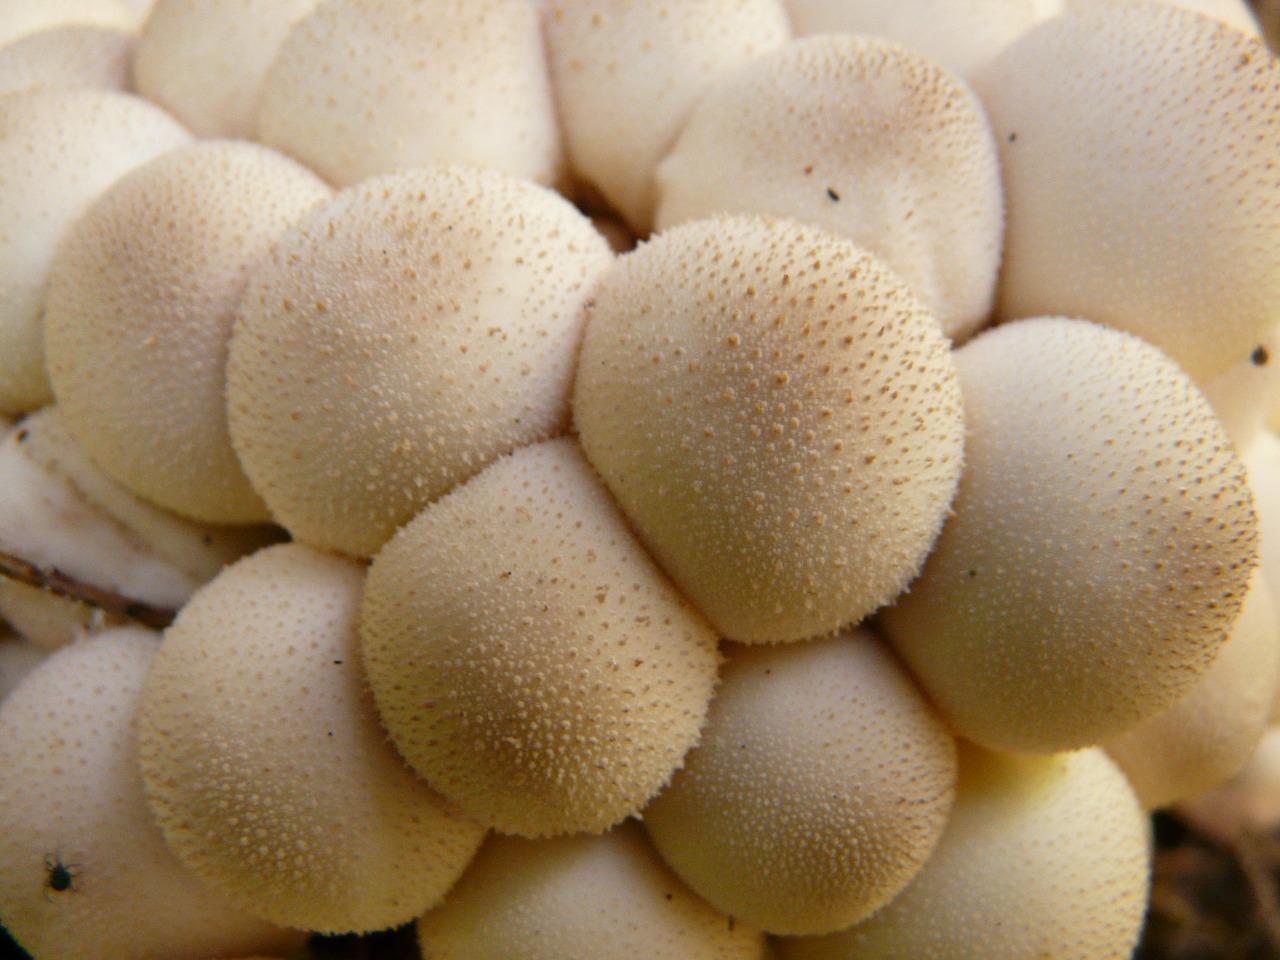 mushroom bovist mushroom dust free photo